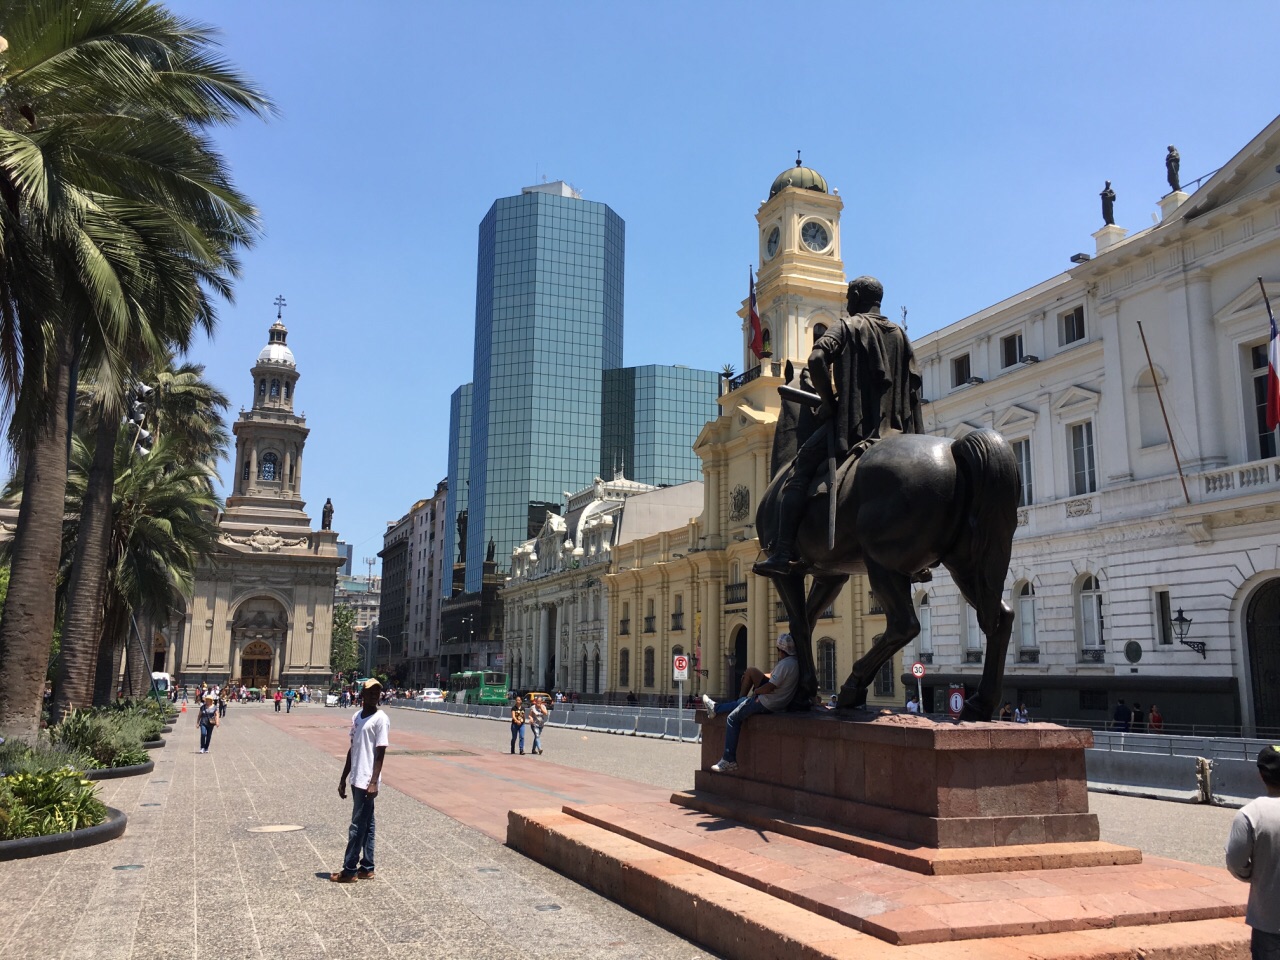 【携程攻略】圣地亚哥首都大区武器广场景点,智利首都圣地亚哥旧城